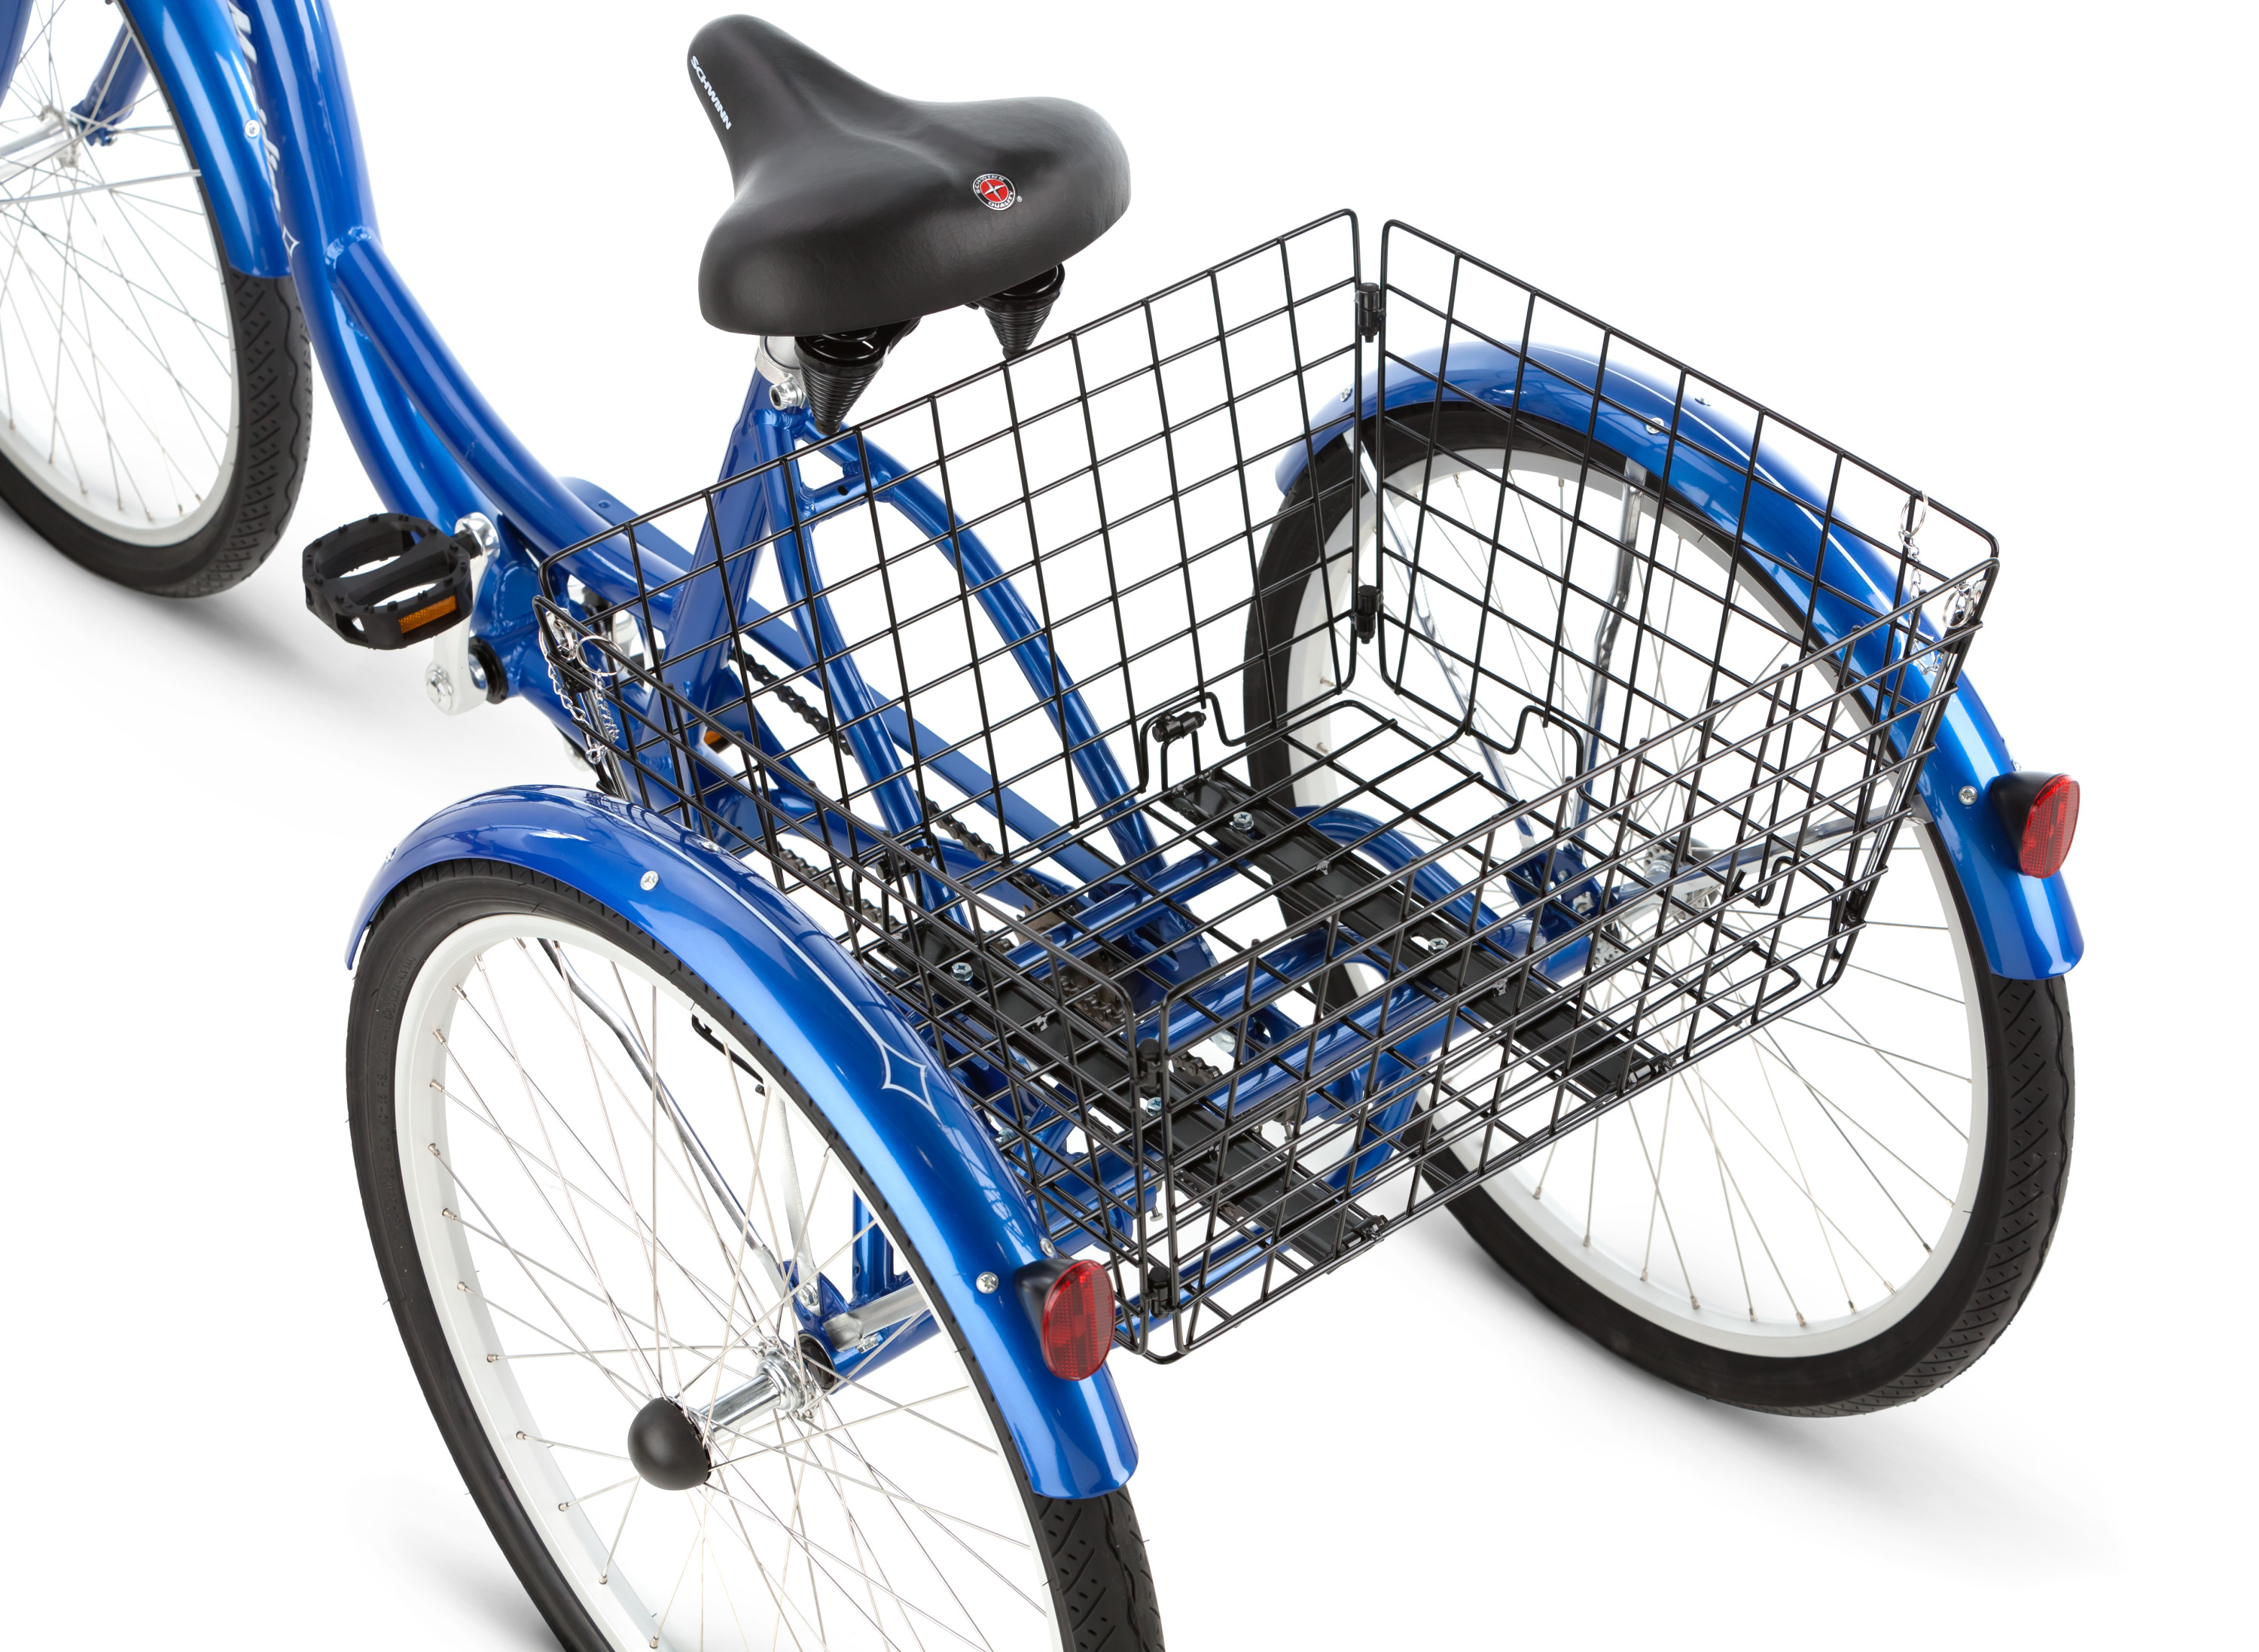 Schwinn Meridian Adult Tricycle, 26-inch wheels, rear storage basket, Blue - image 5 of 6